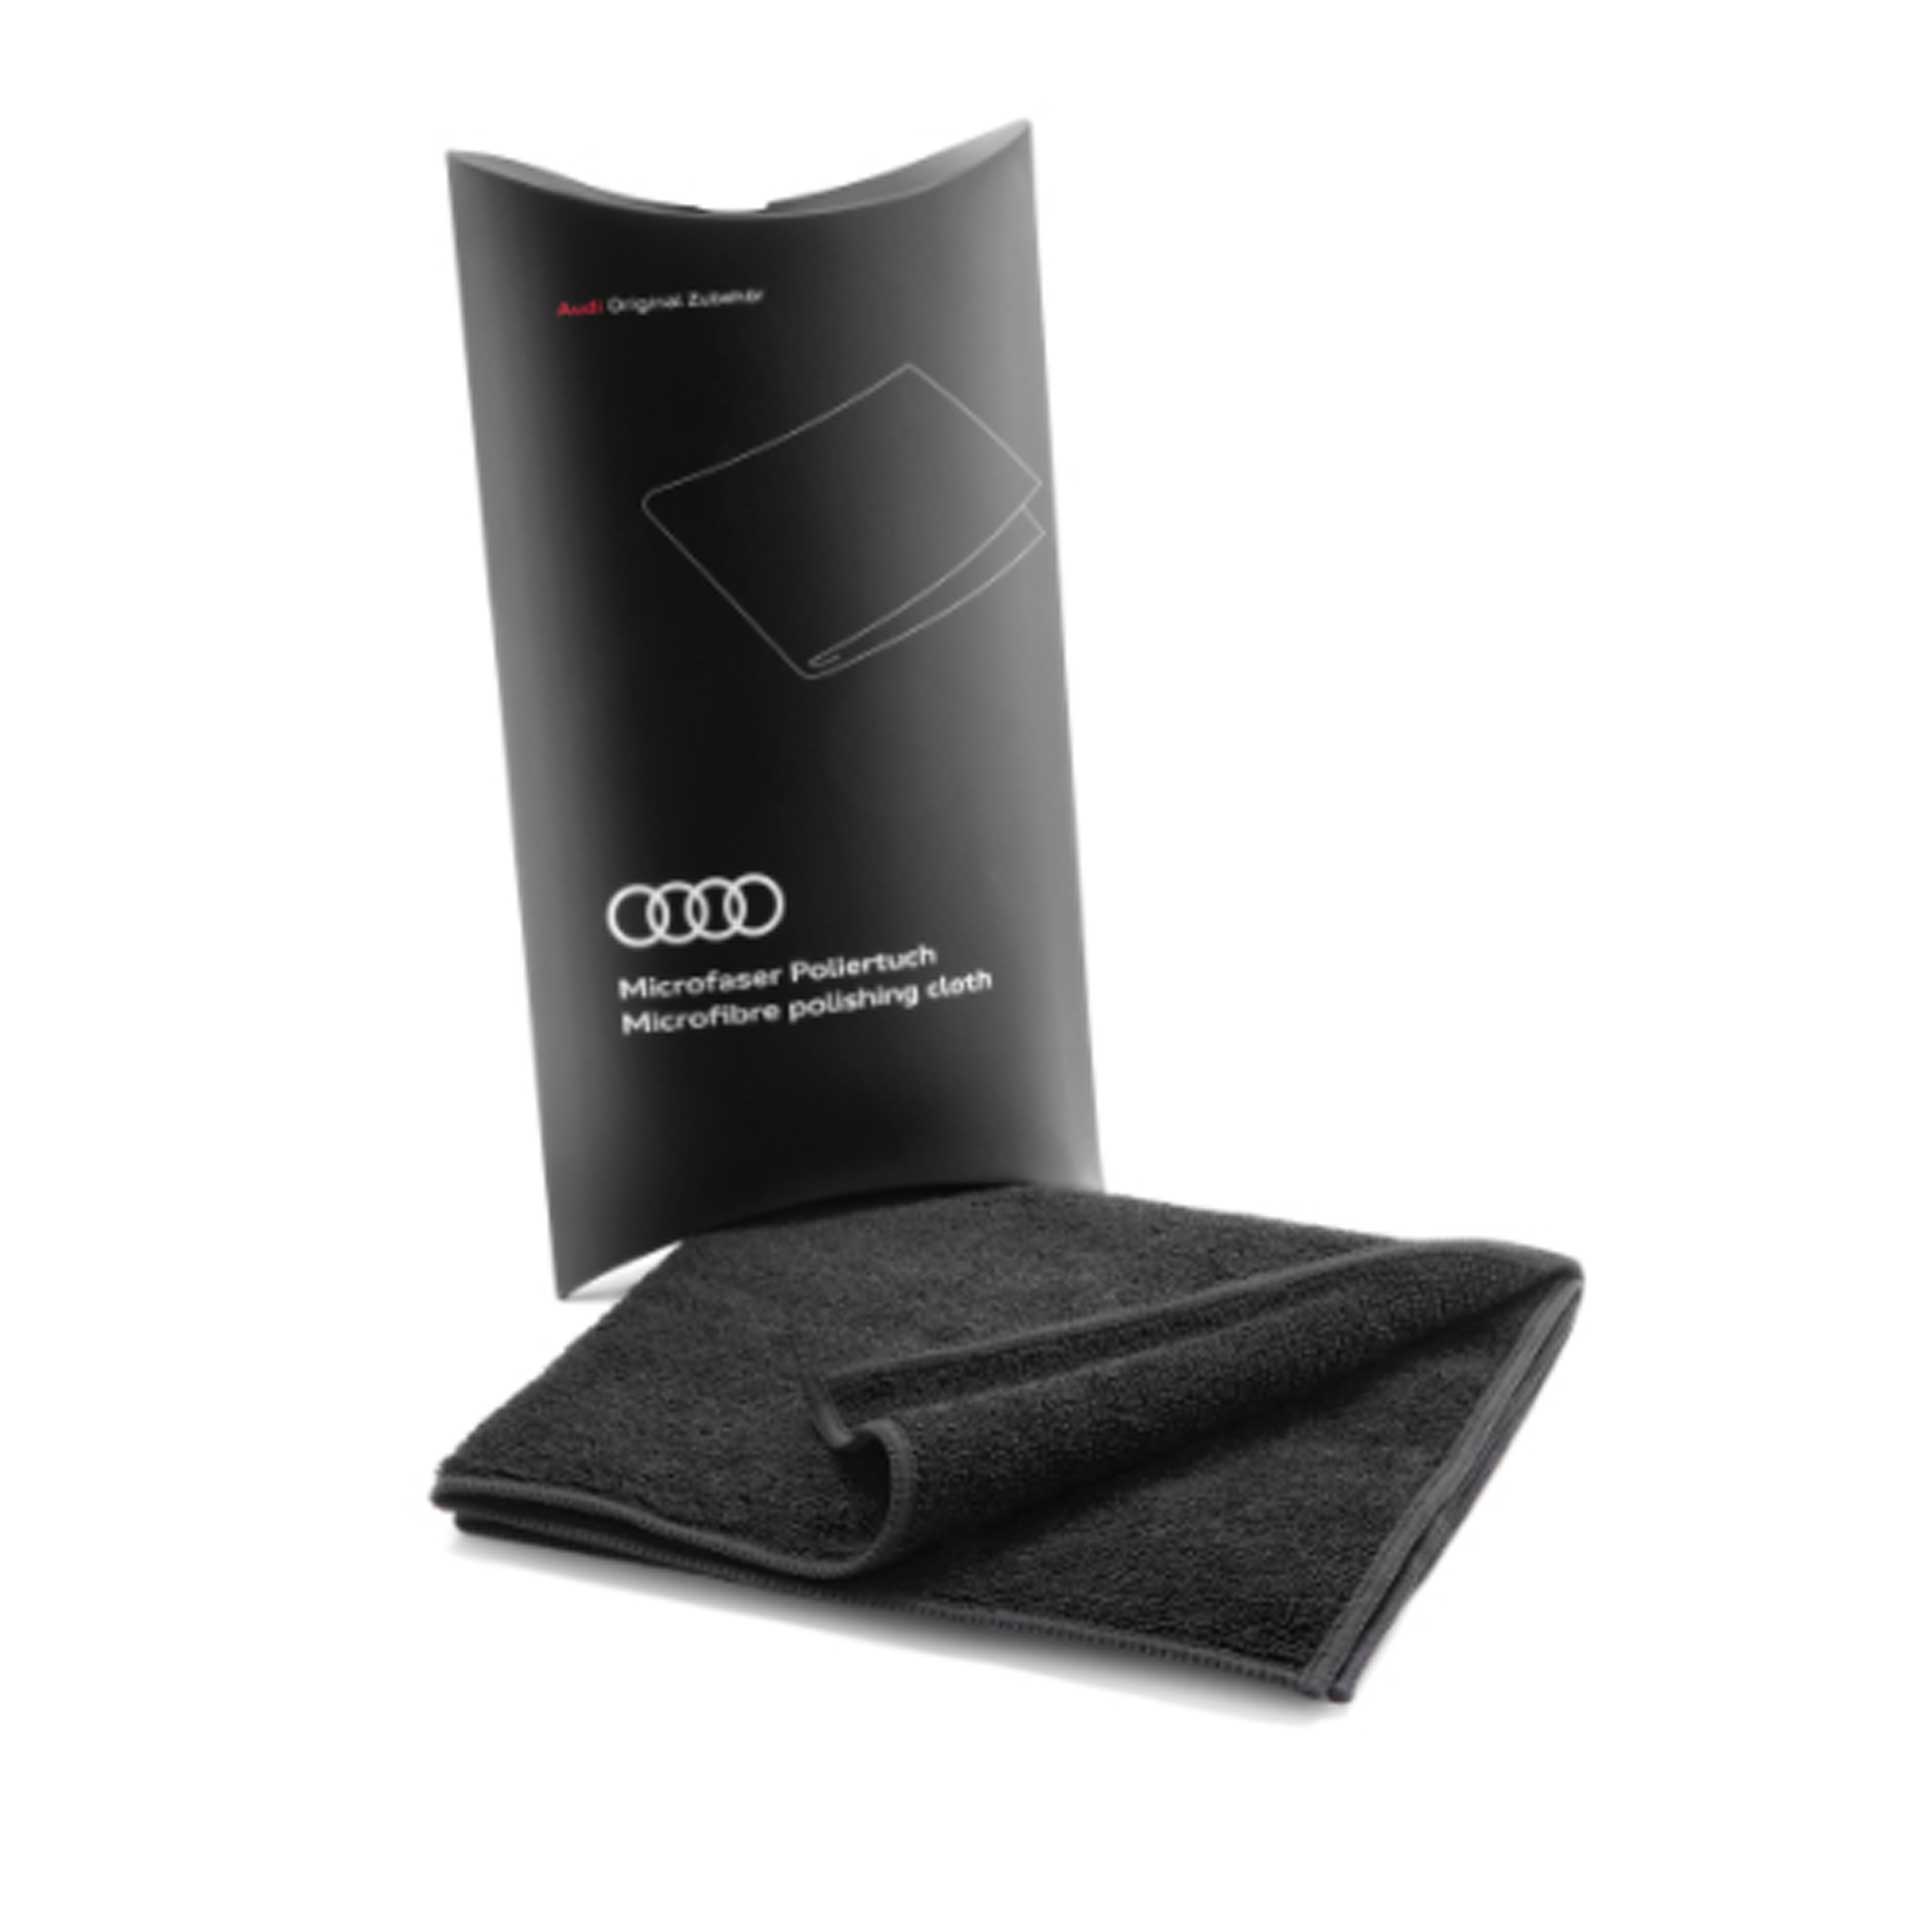 Audi Poliertuch schwarz Mikrofasertuch waschbar